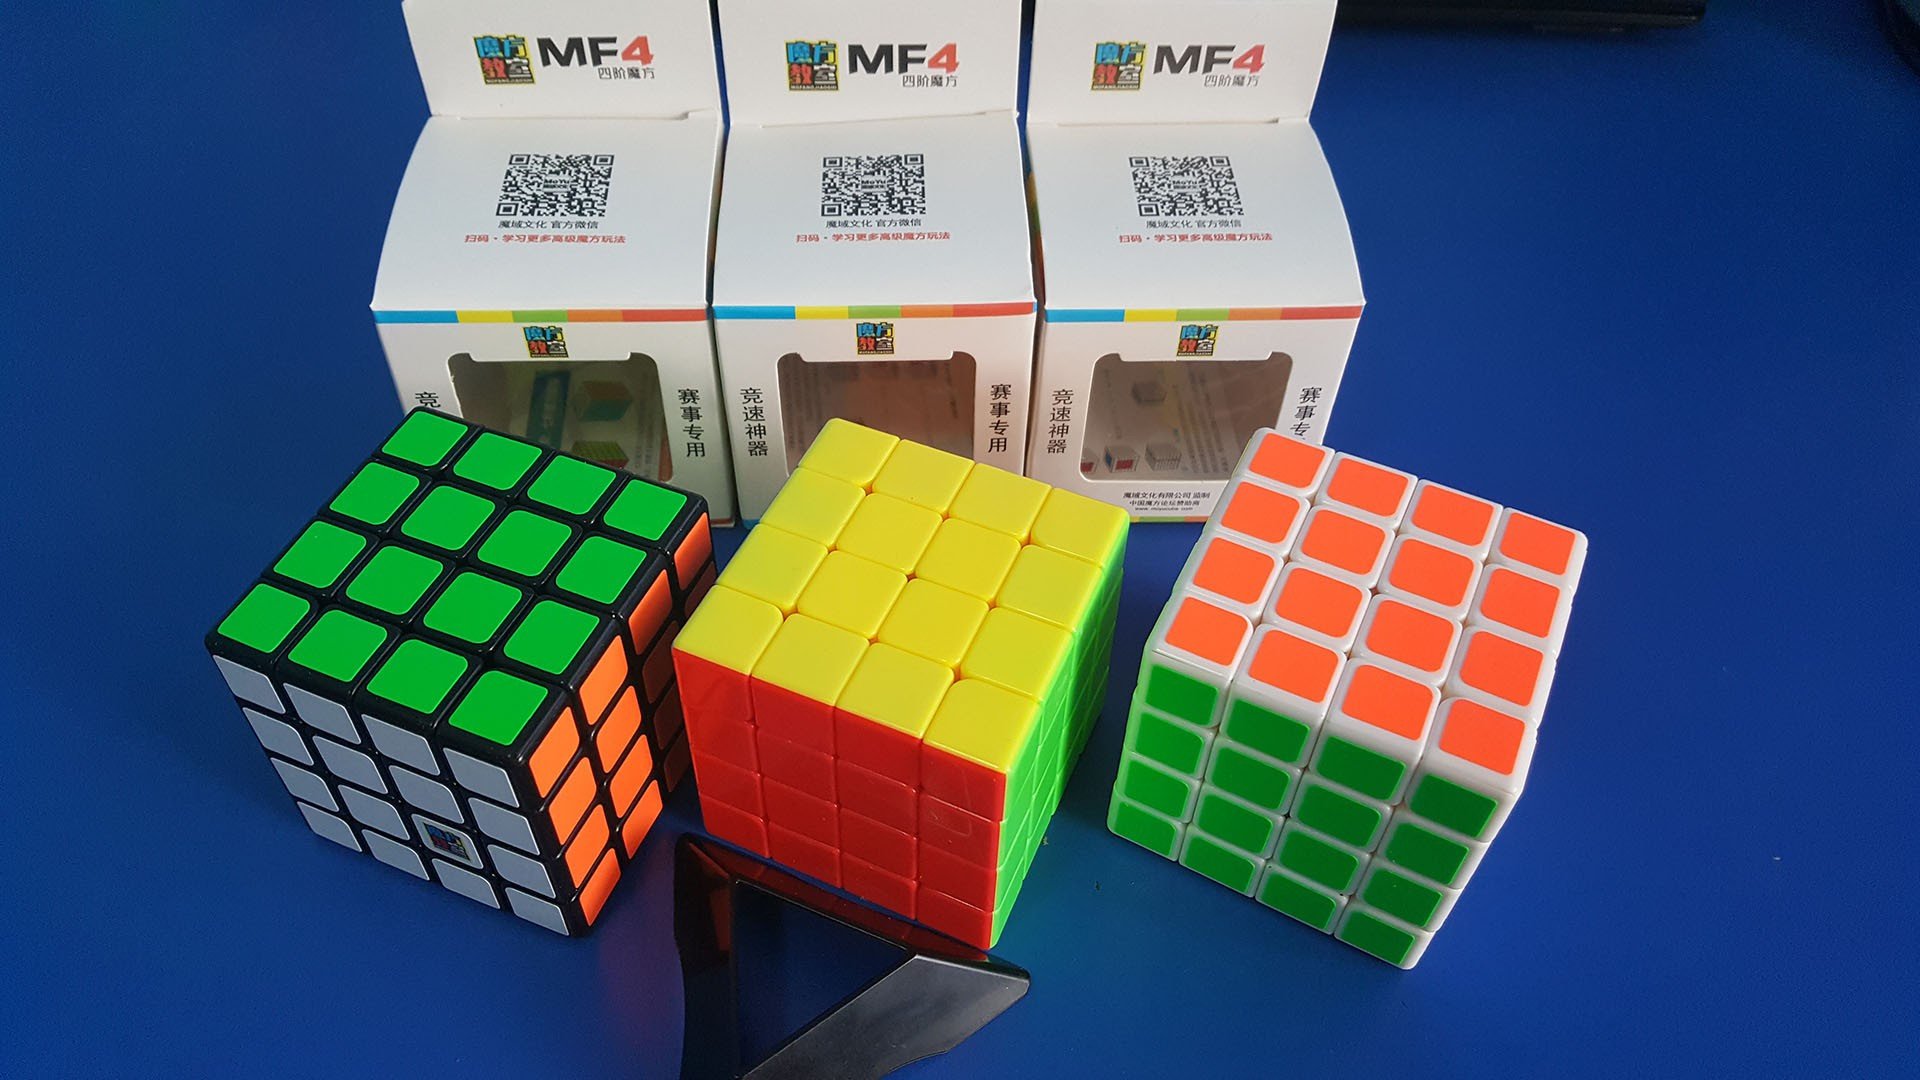 Hướng dẫn cách giải khối Rubik 4x4 đơn giản